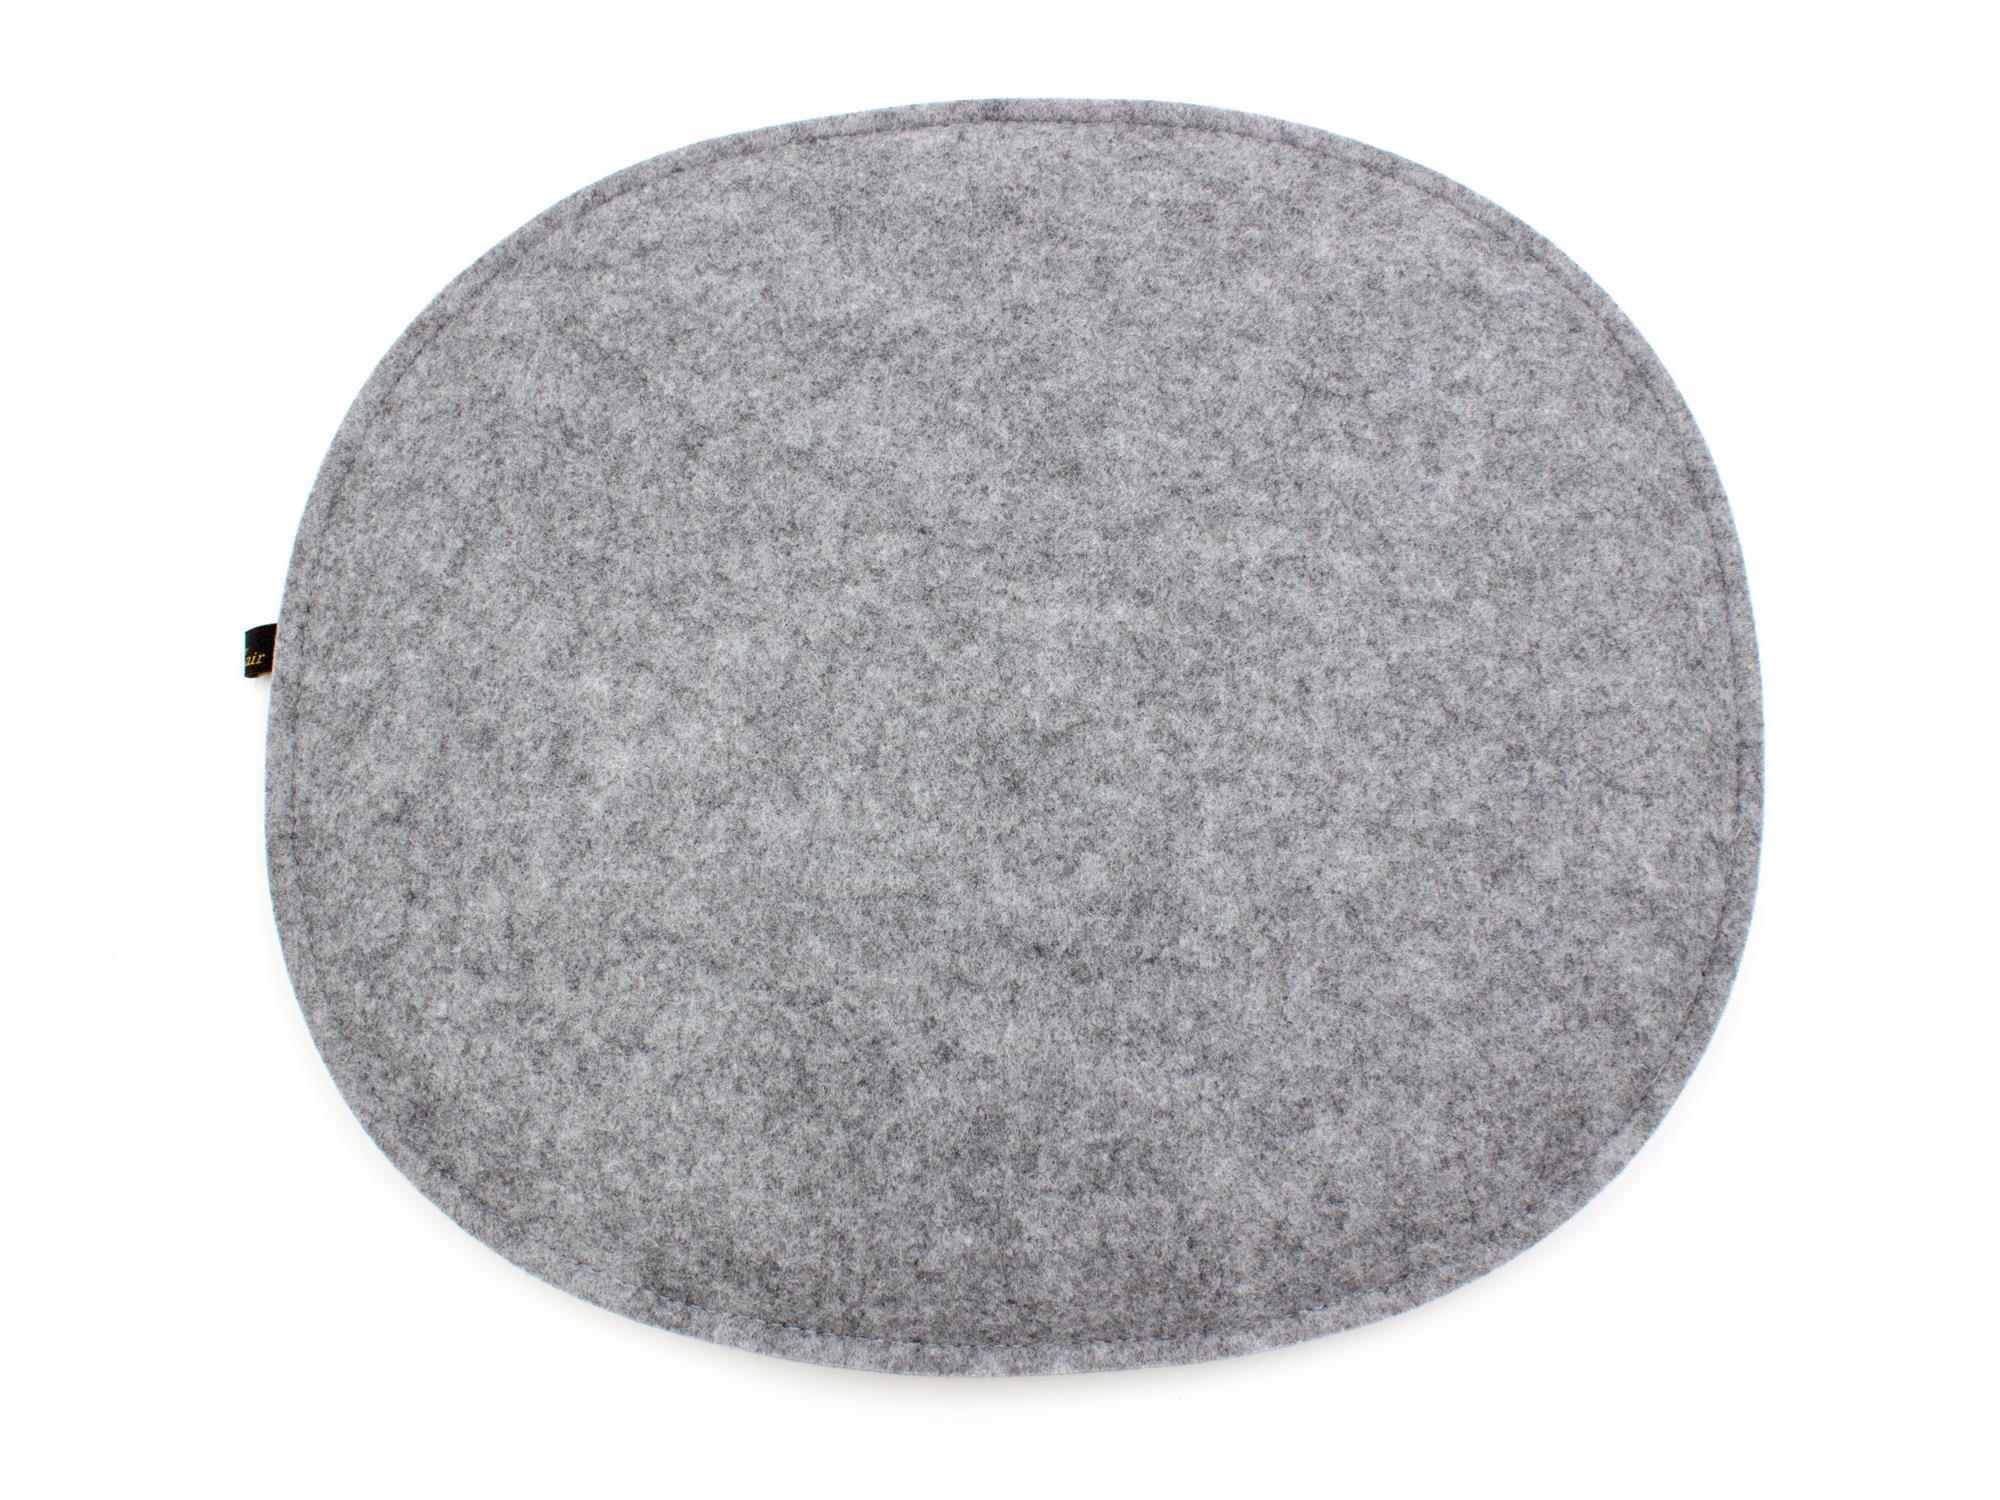 Filz Sitzkissen oval für Eames in cremeweiß und graumeliert (LX2148)